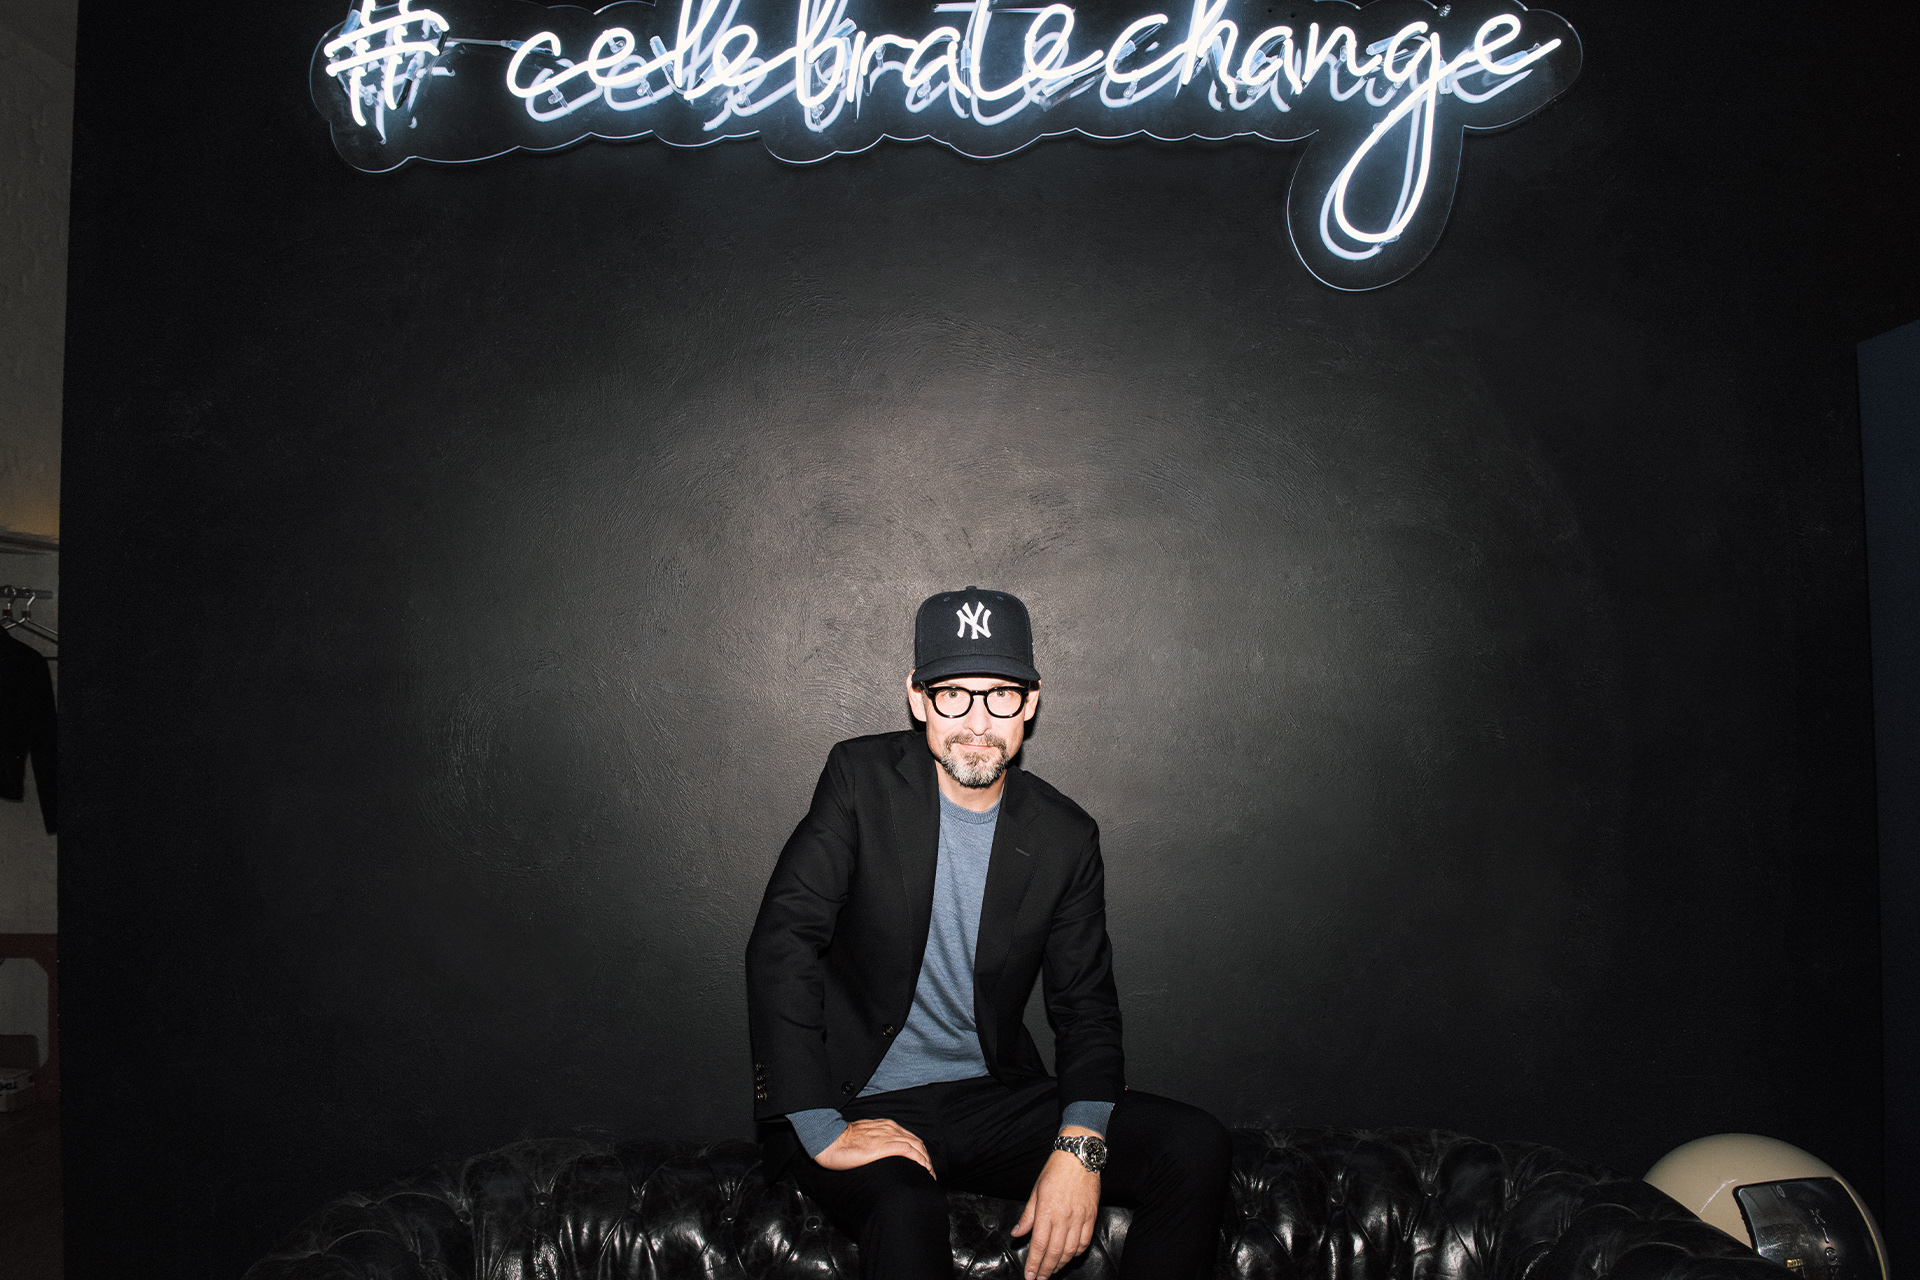 Voigt zit op een bank in zijn kantoor met boven hem de festivalslogan “Celebrate Change”.